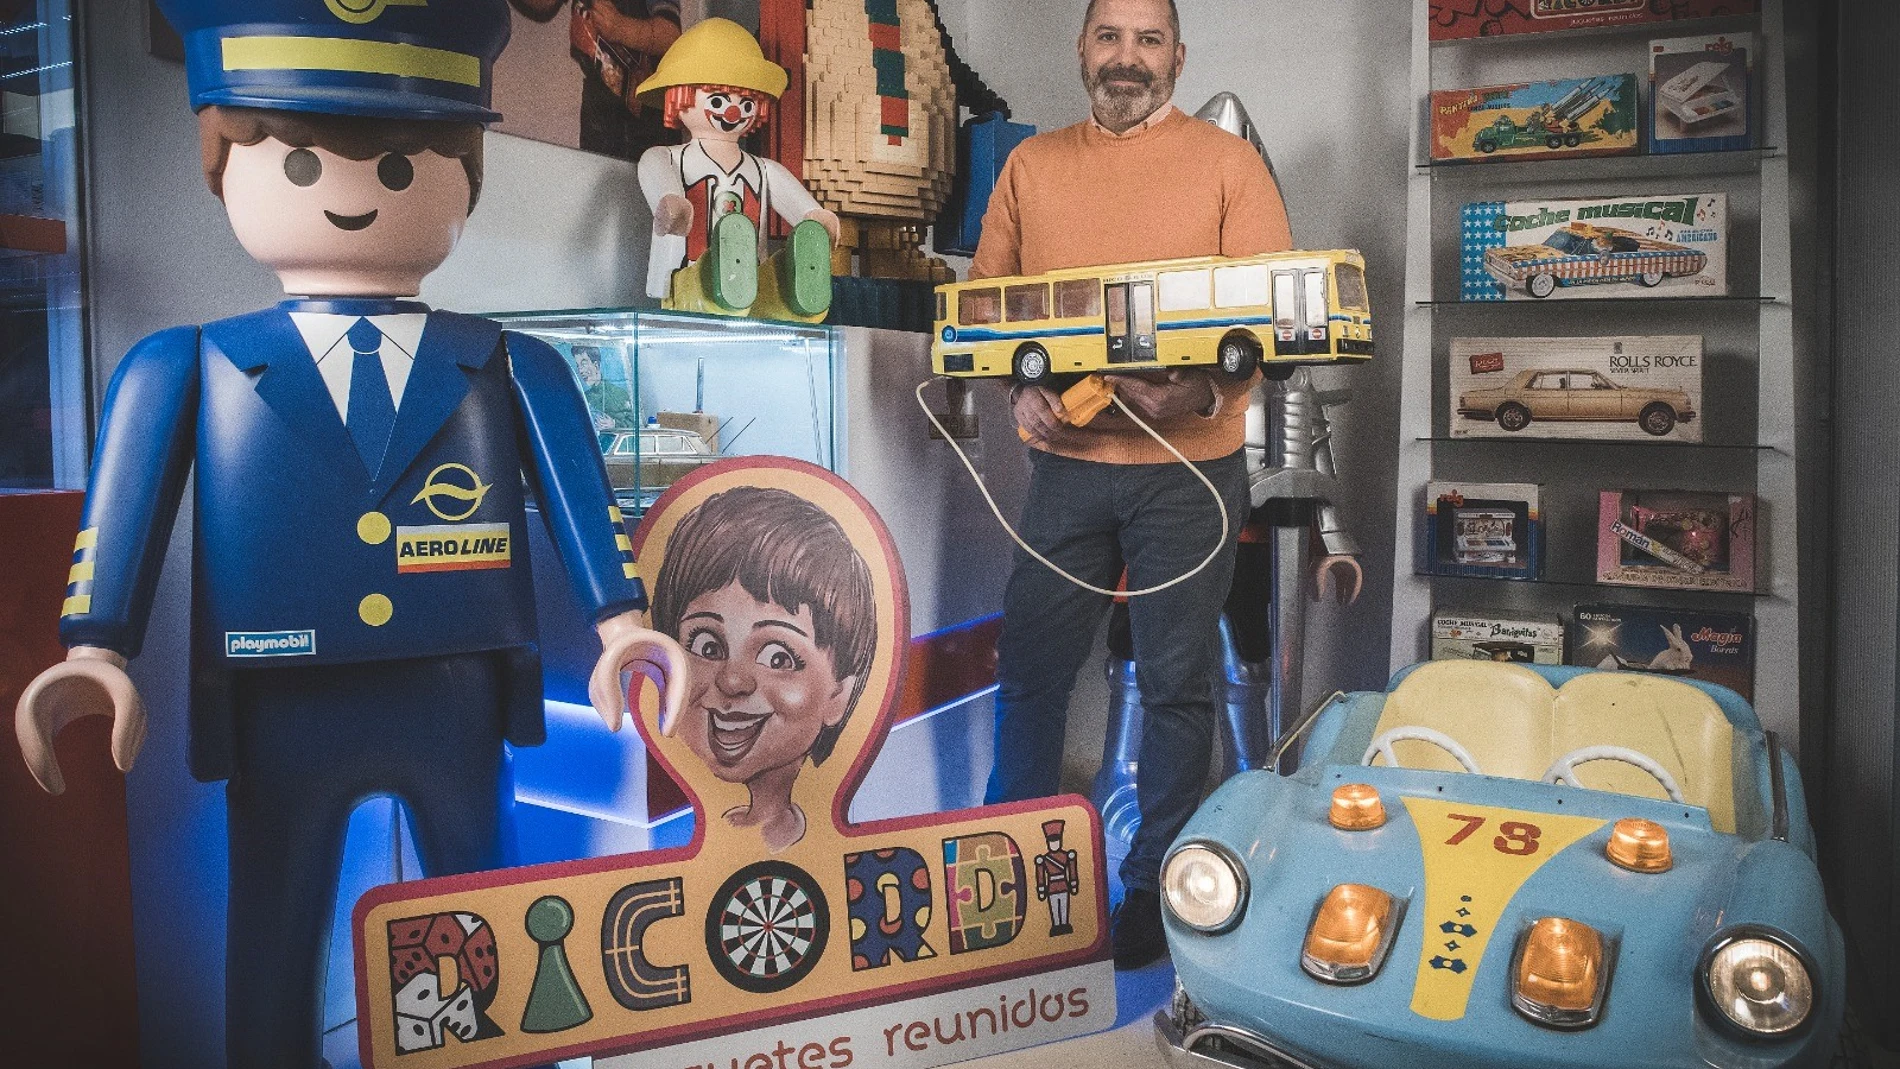 José Manuel posa con el autobús Mercedes de Rico, su juguete favorito y con el que empezó su pasión